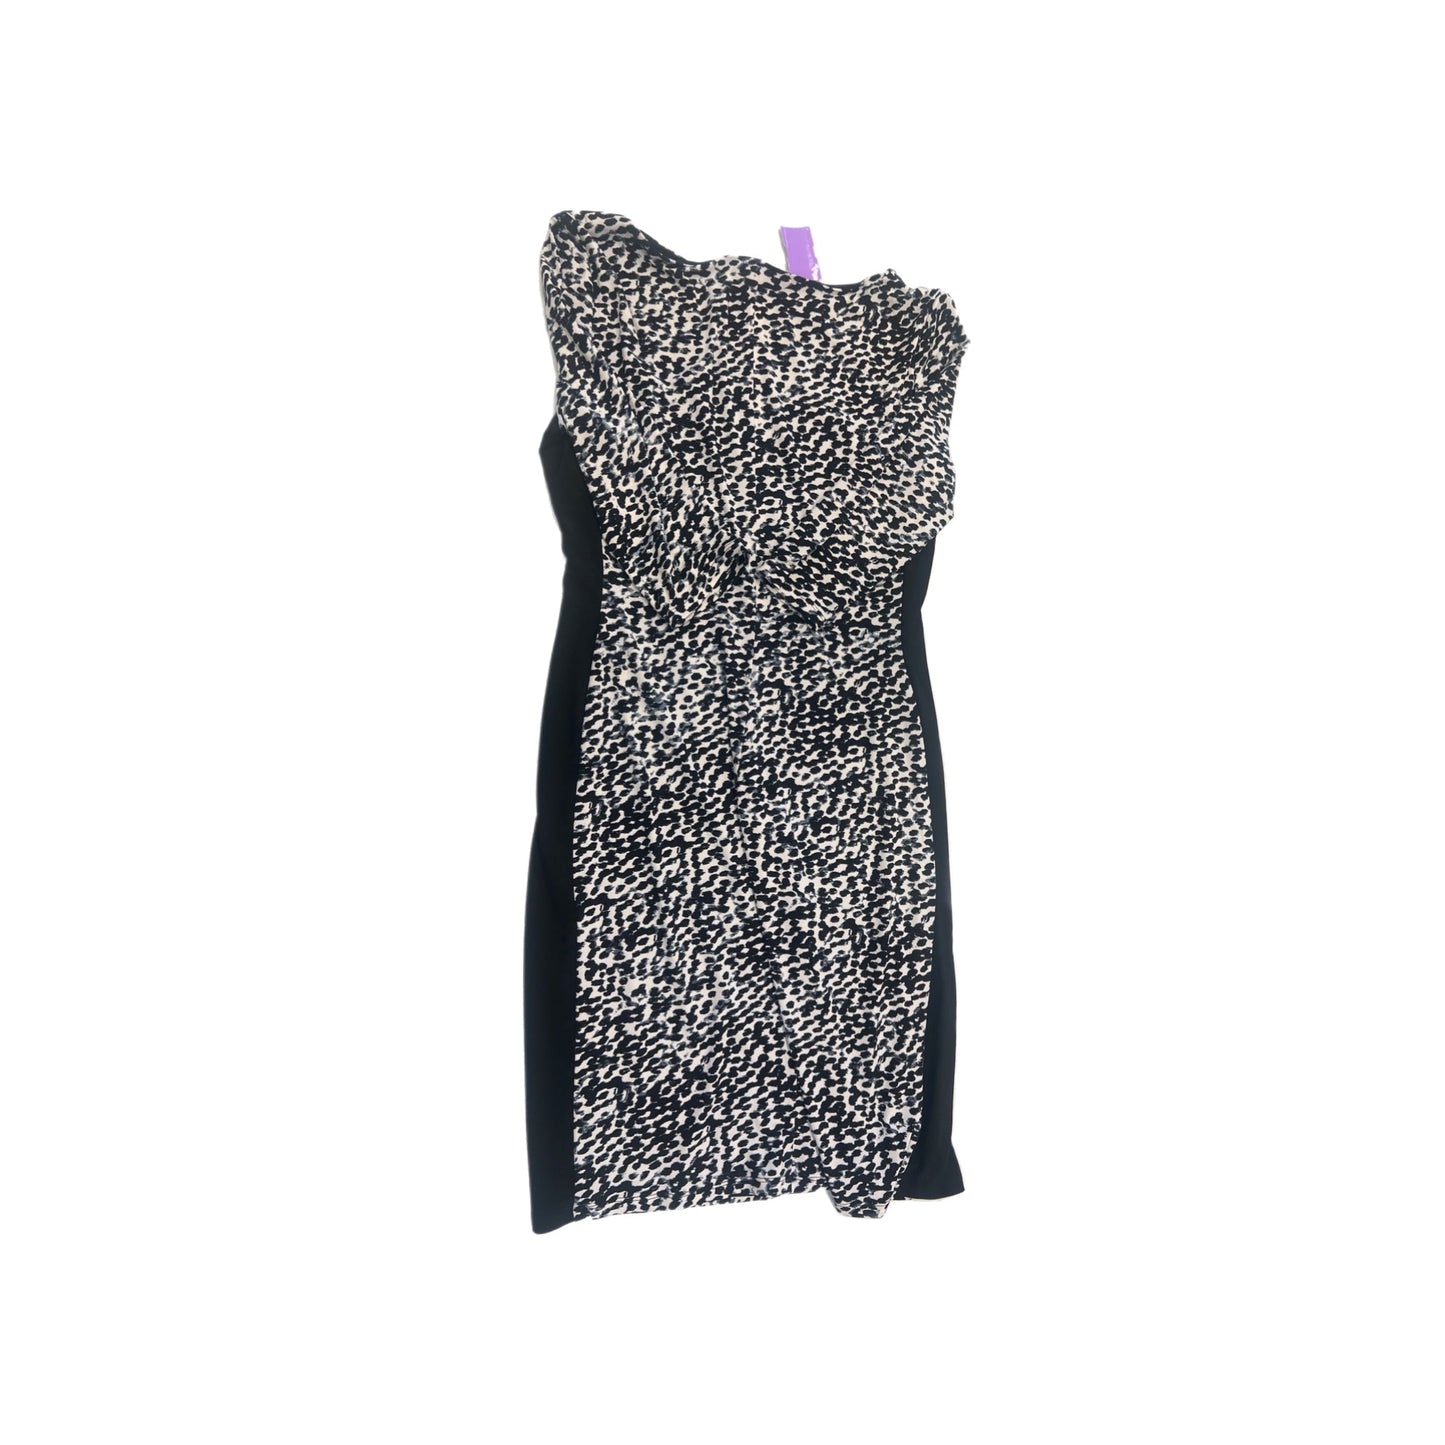 Dress Casual Short By Ralph Lauren  Size: 12